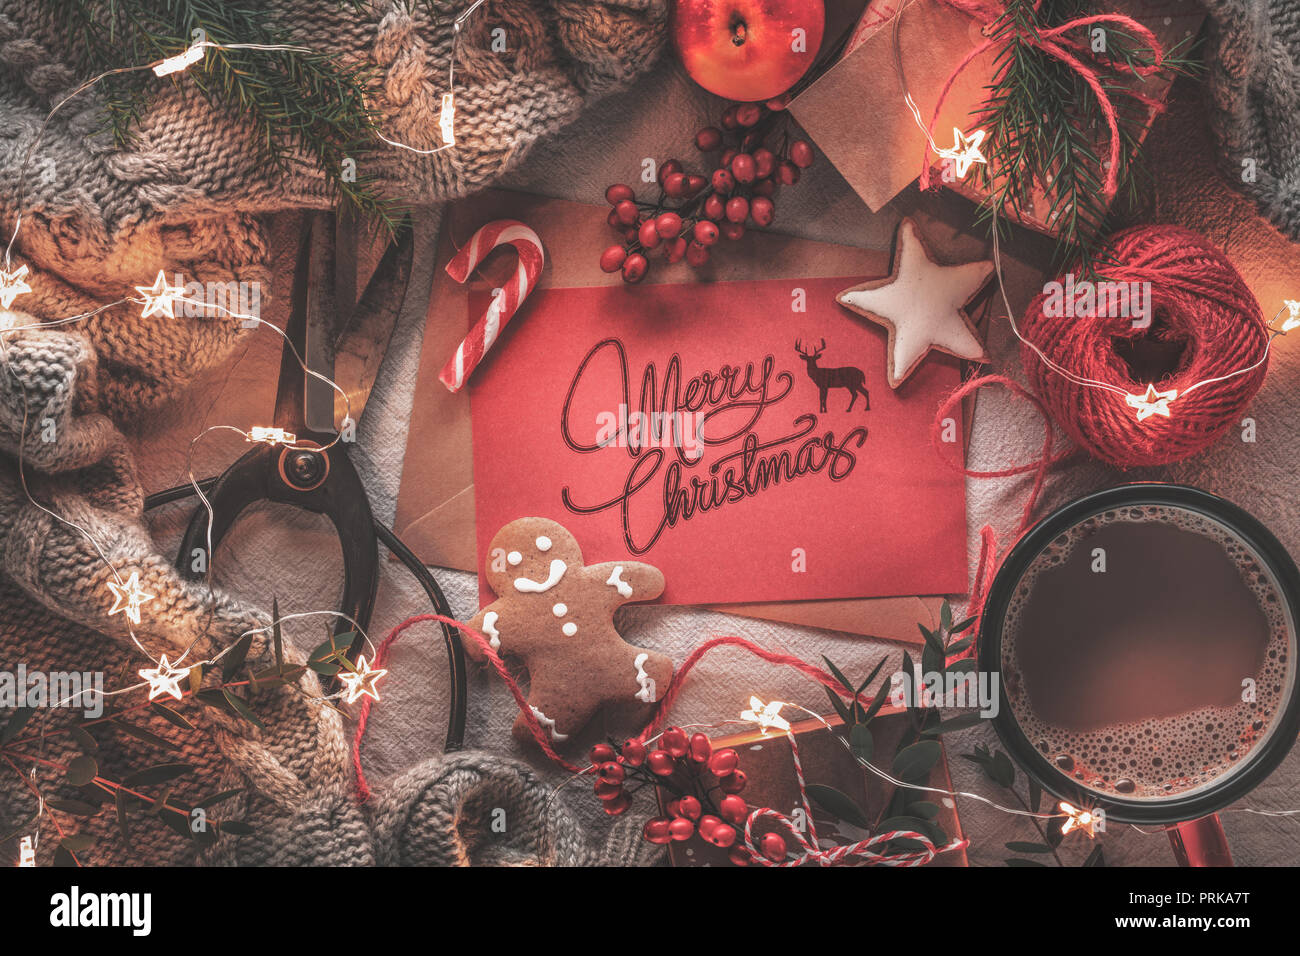 Carta de Navidad, fruta, café, cajas de regalo y suéter caliente Foto de stock